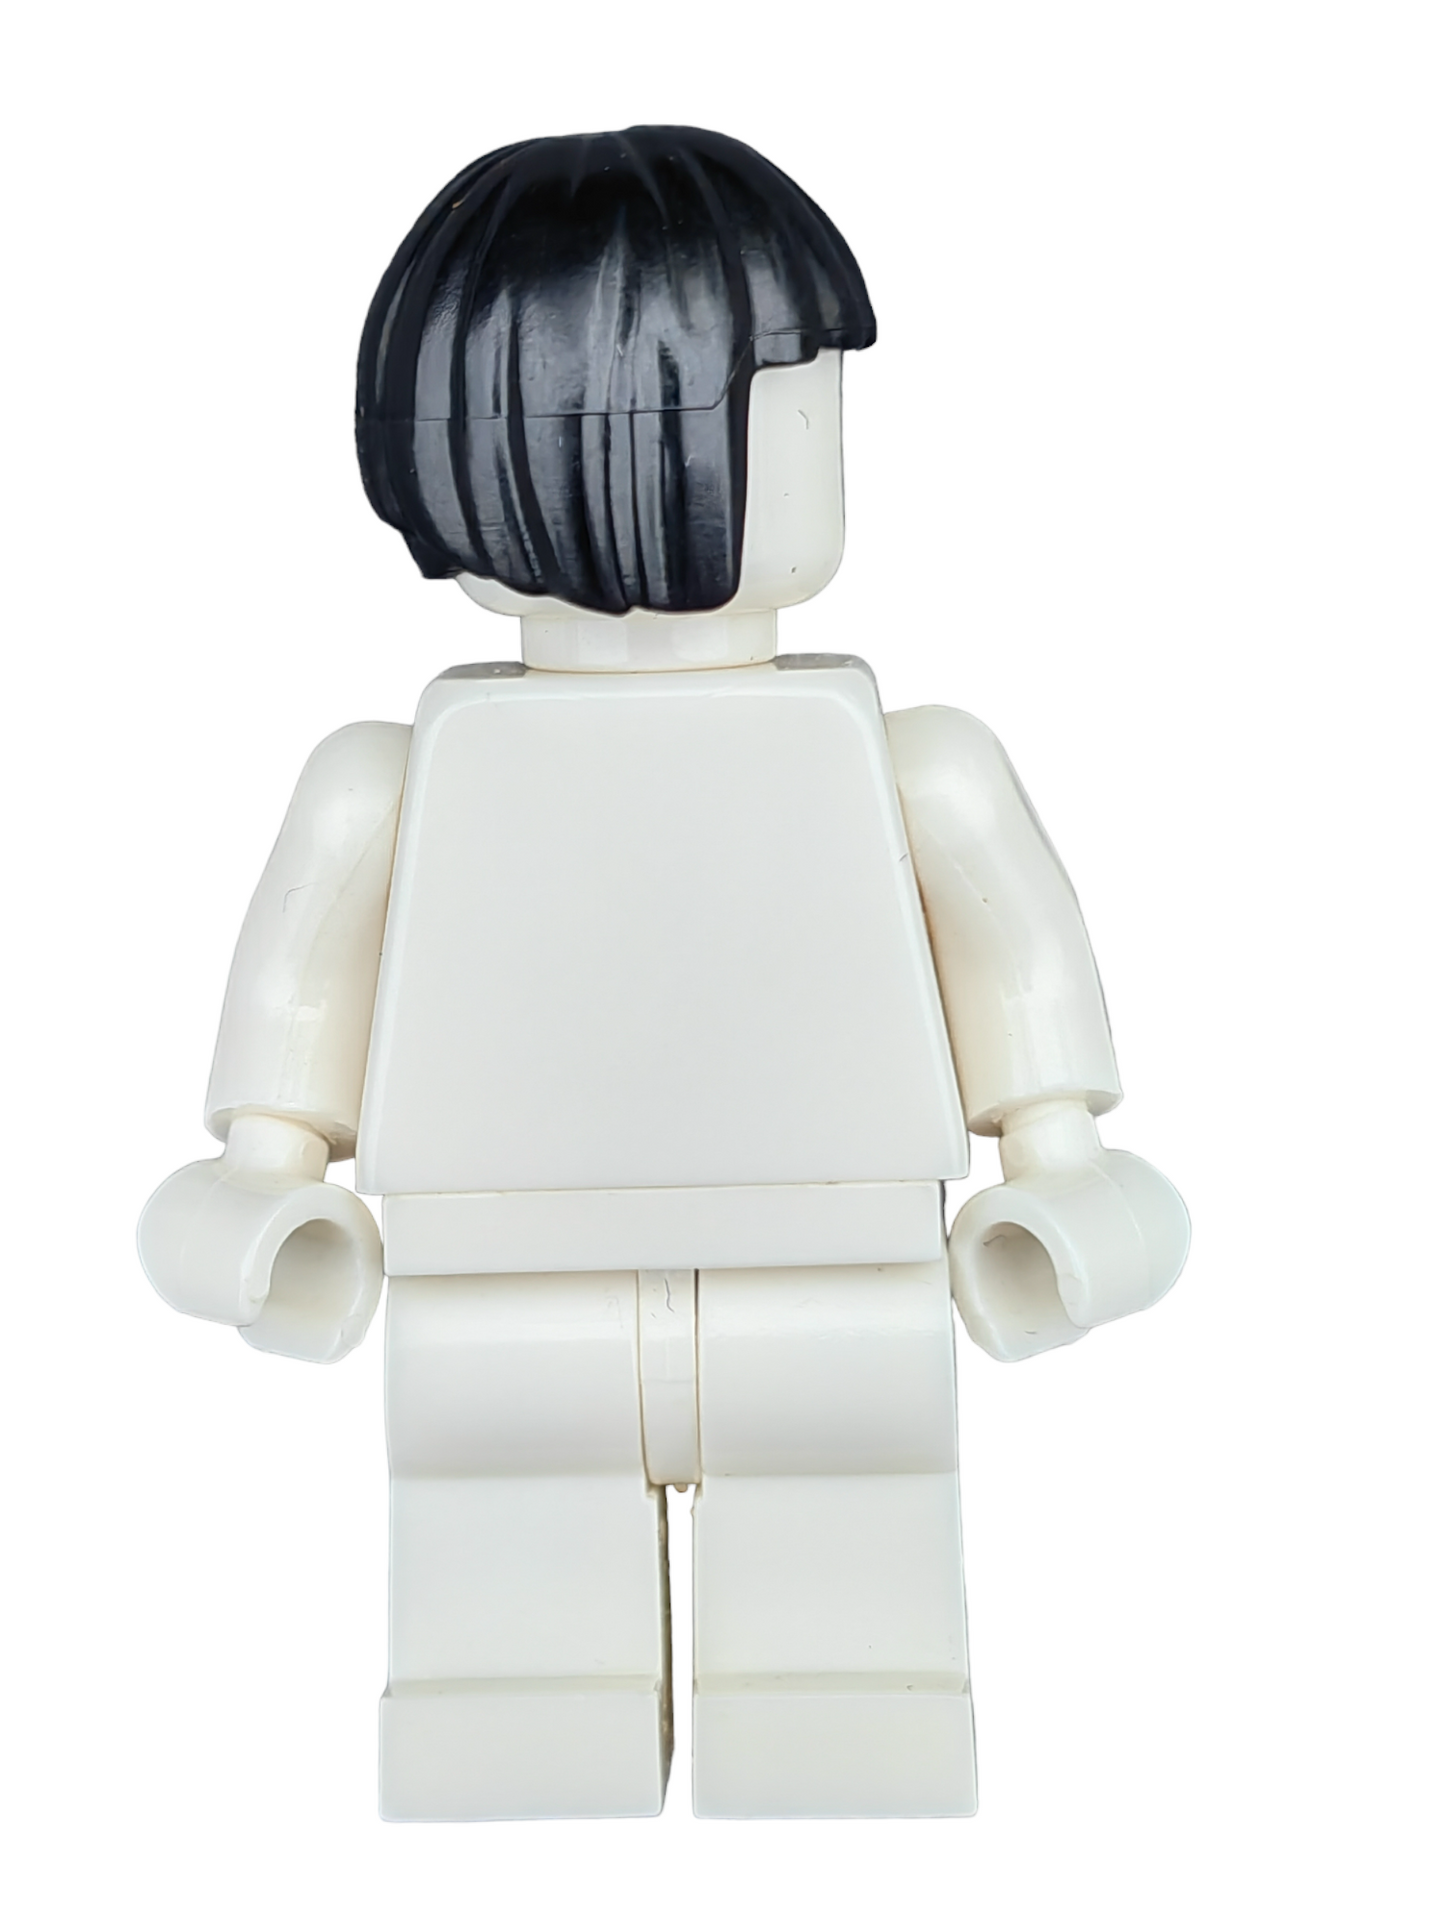 LEGO Wig, Black Hair Cut into a Short Bob - UB1185